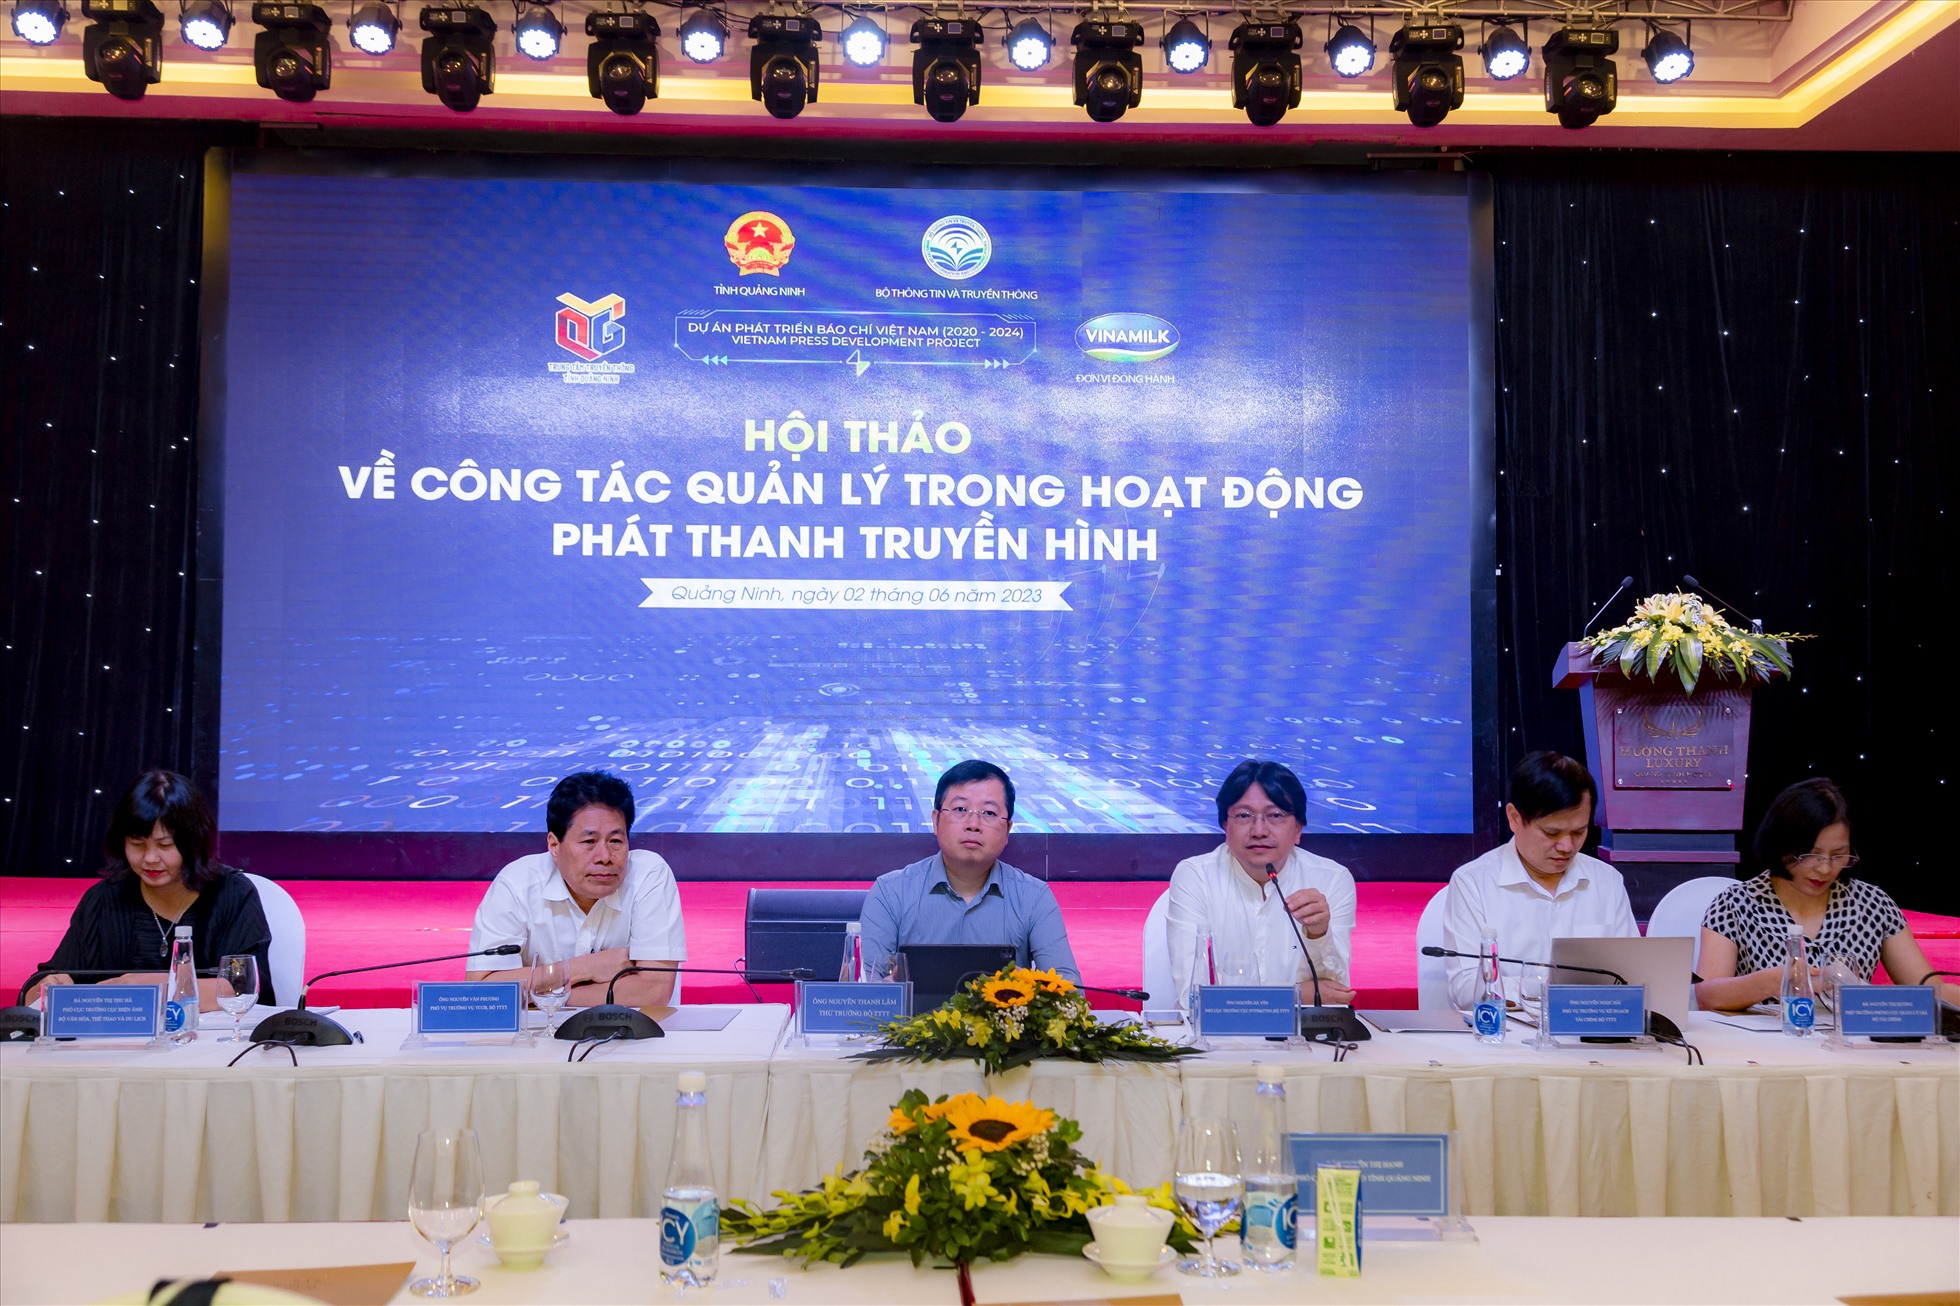 Hội thảo được chủ trì bởi Ông Nguyễn Thanh Lâm – Thứ trưởng Bộ TT&TT. Ảnh: Vinamilk